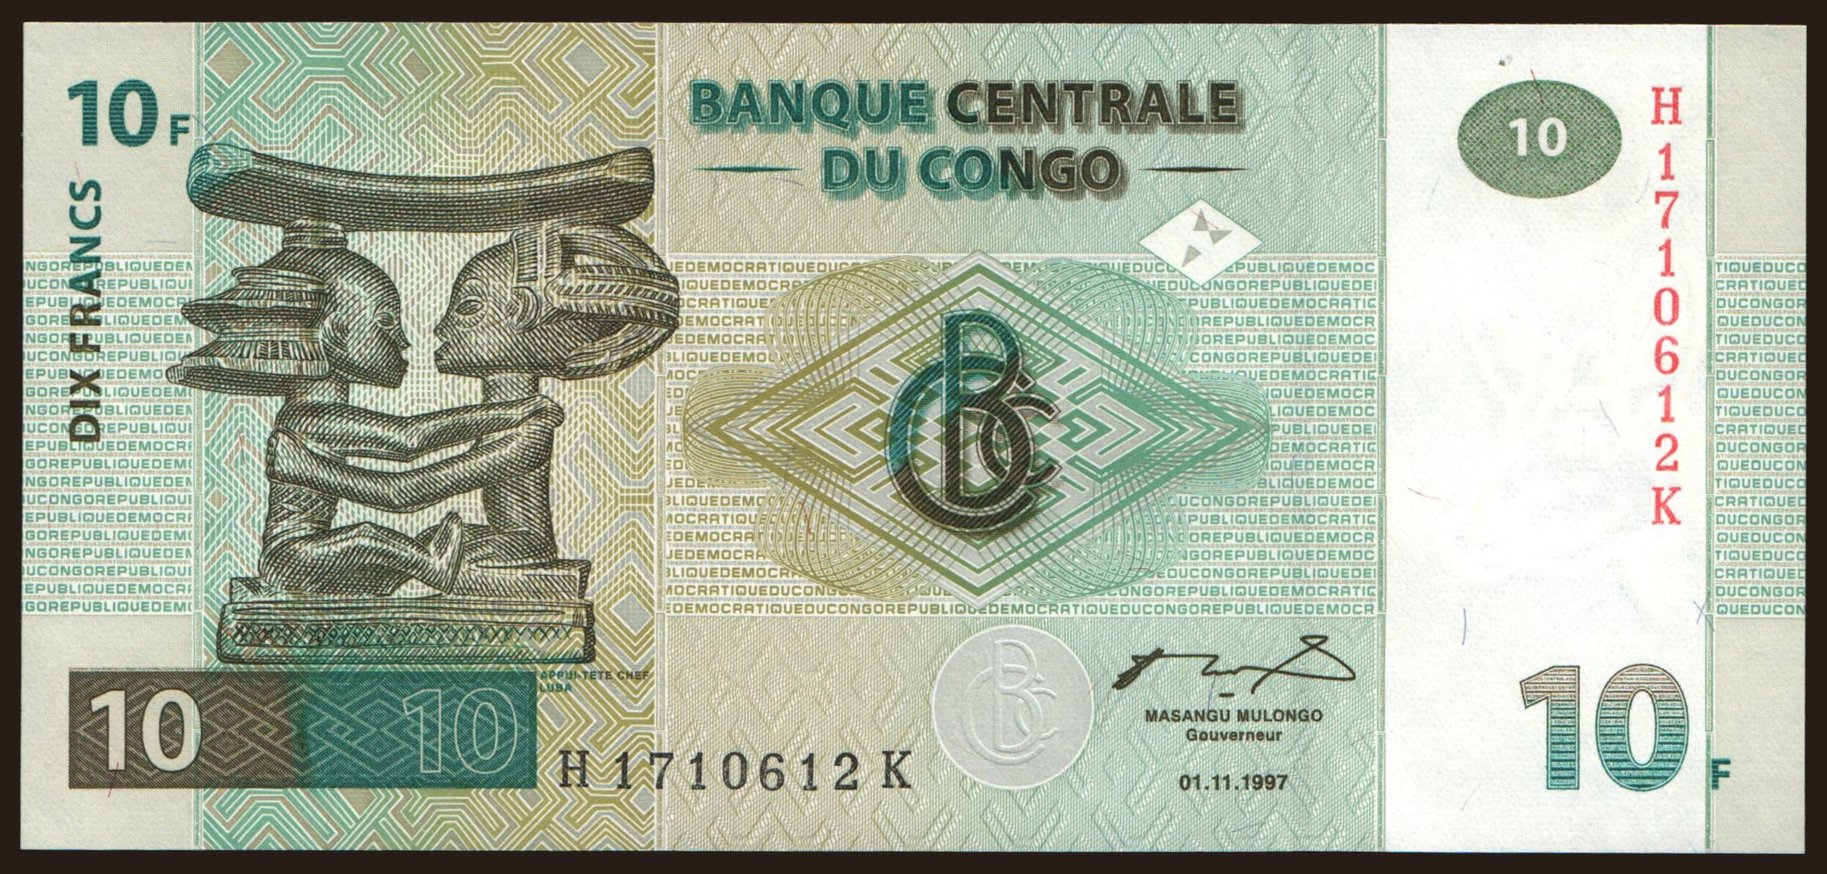 10 francs, 1997